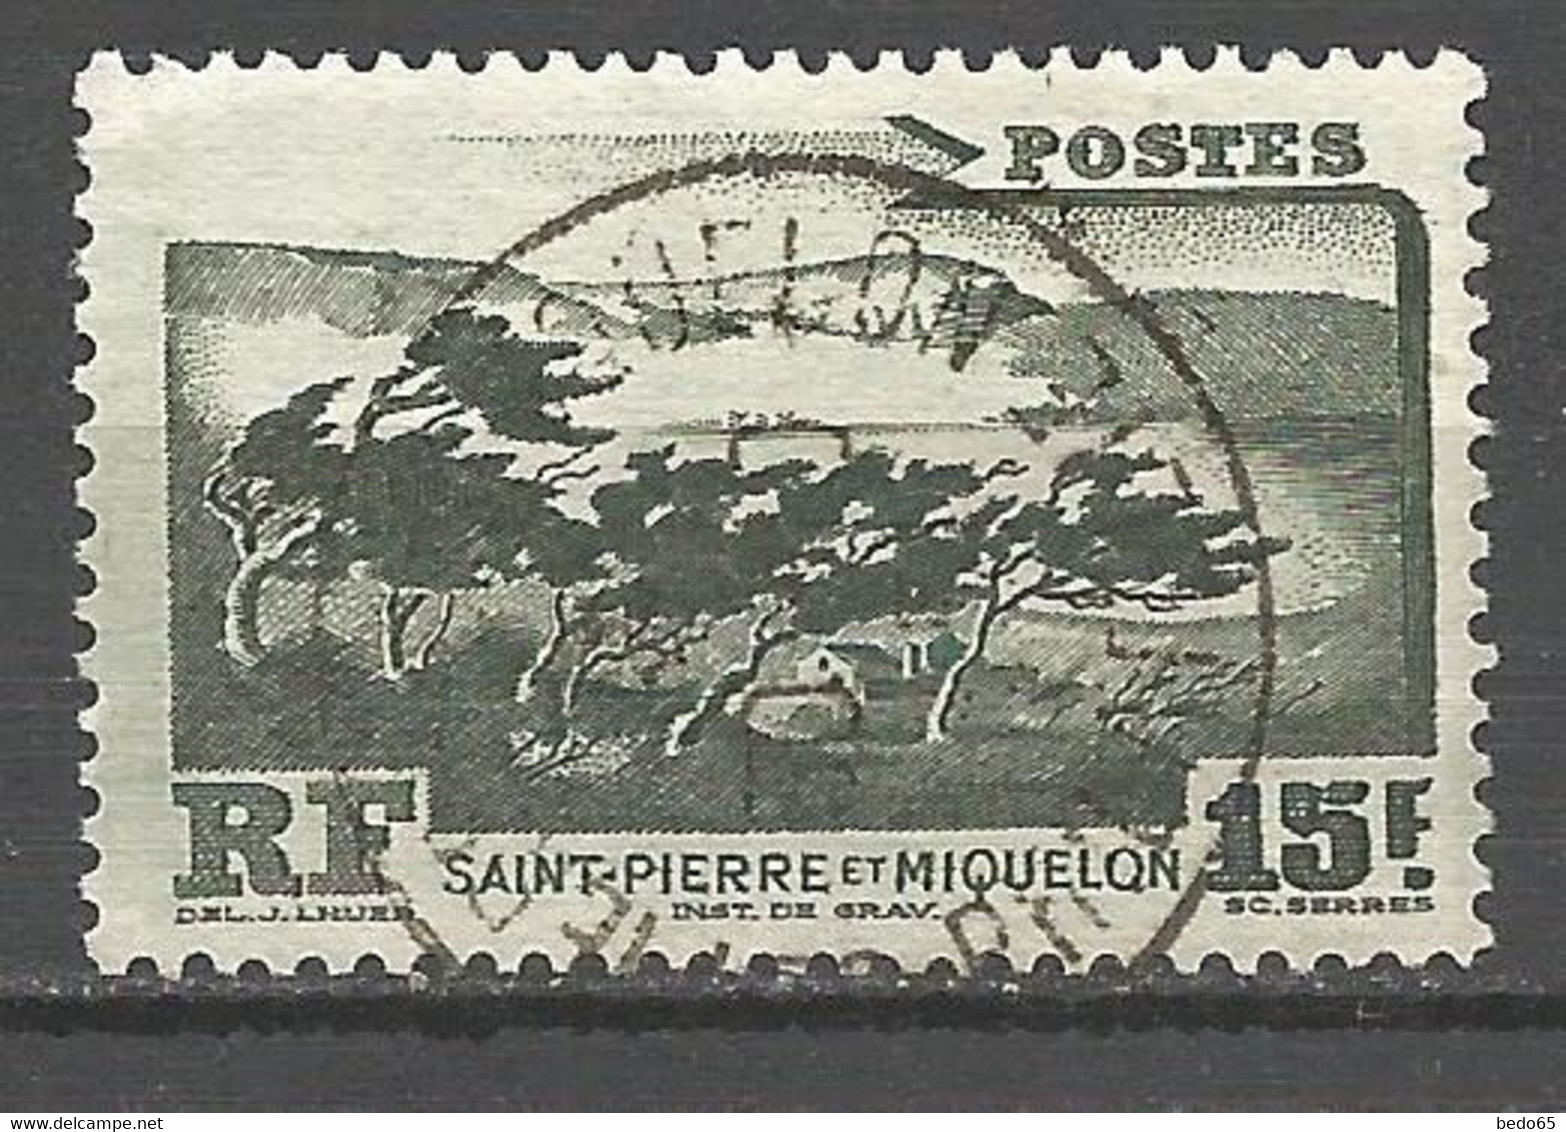 ST PIERRE ET MIQUELON N° 341 CACHET ST P ET MIQUELON - Used Stamps